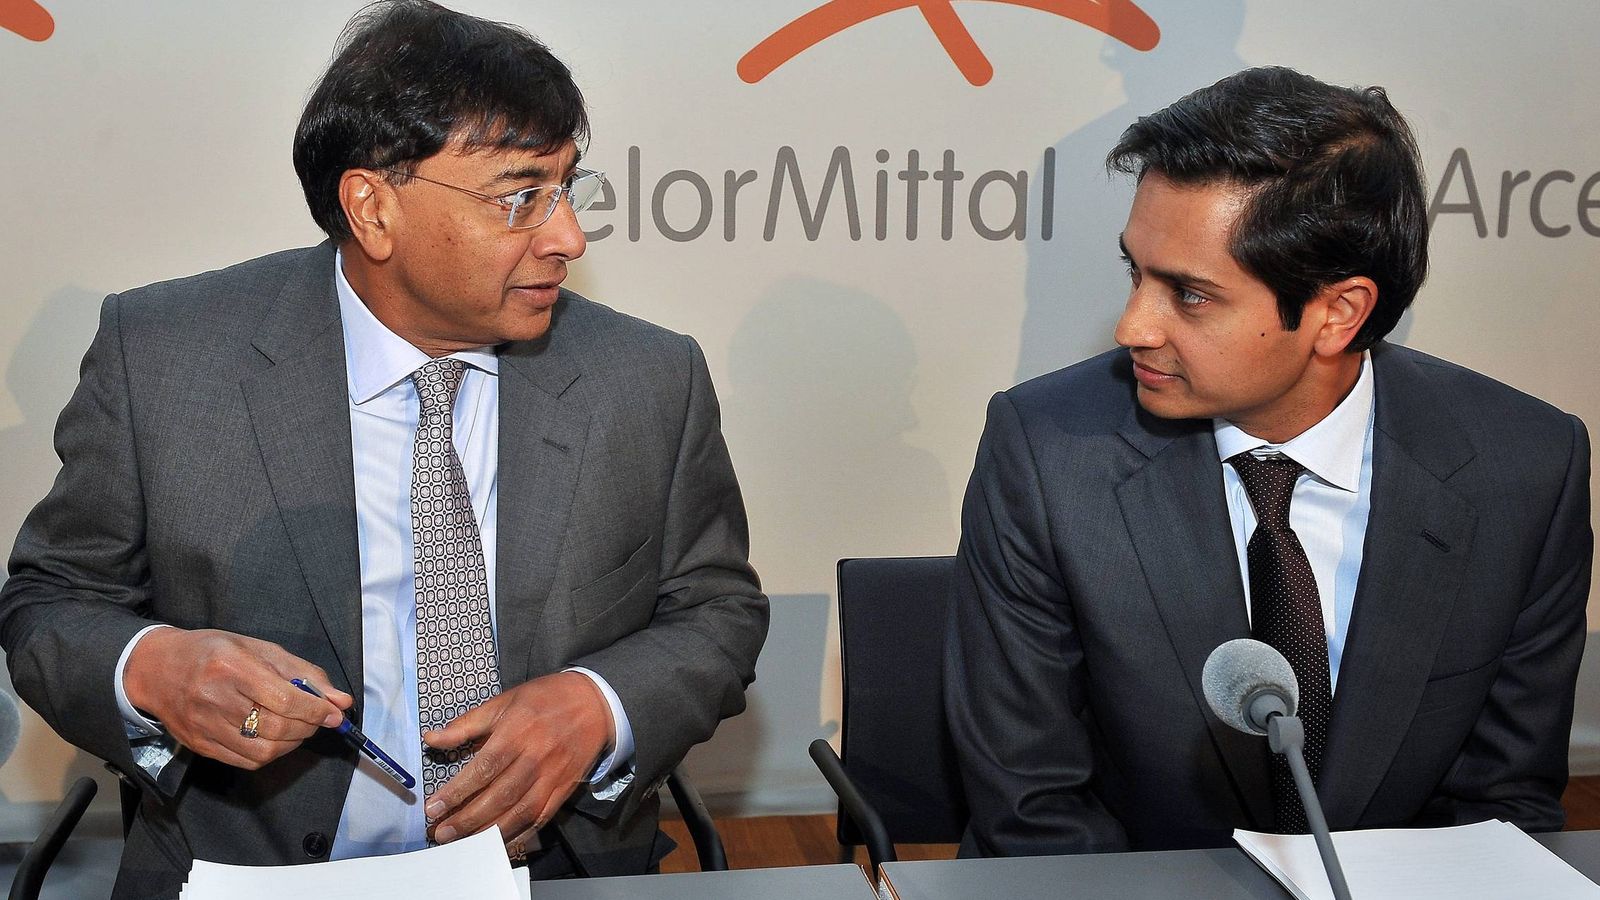 Foto: El consejero delegado del gigante siderúrgico ArcelorMittal Lakshmi Mittal y el director financiero Aditya Mittal